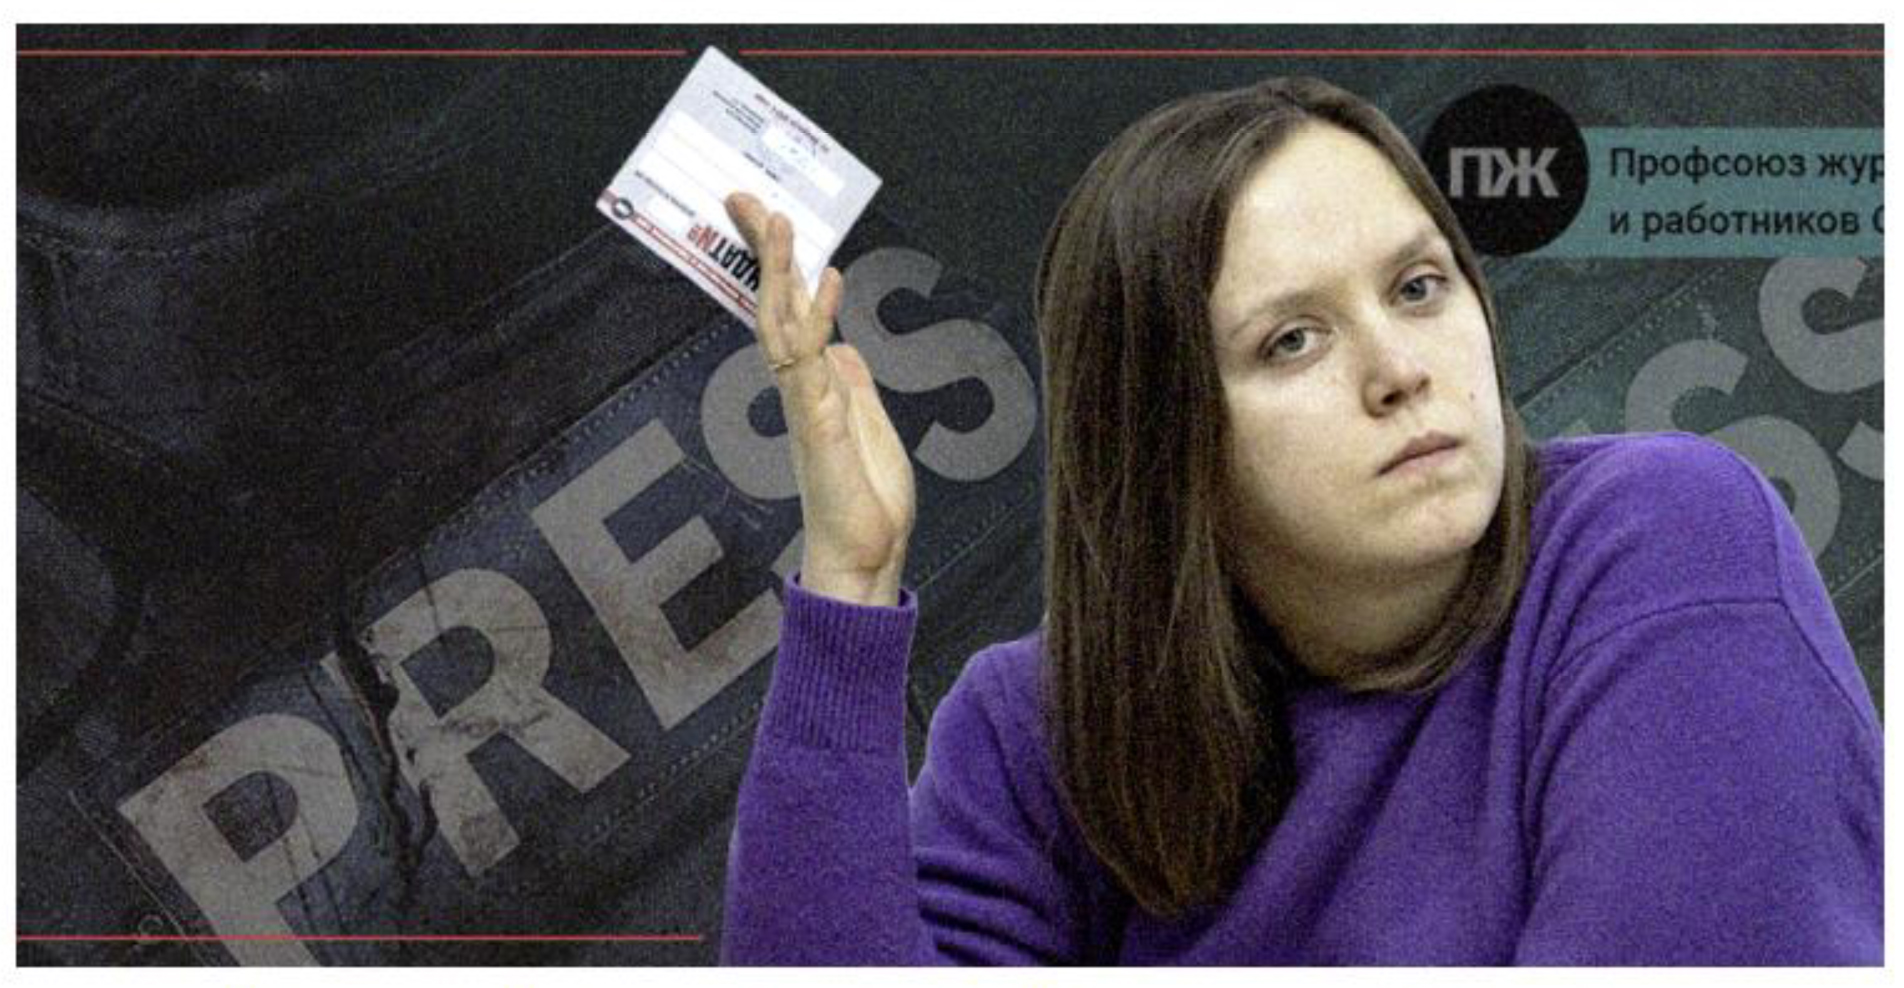 Una periodista sostiene su tarjeta de afiliada al Sindicato de Periodistas Rusos. Una periodista sostiene su tarjeta de afiliada al Sindicato de Periodistas Rusos.